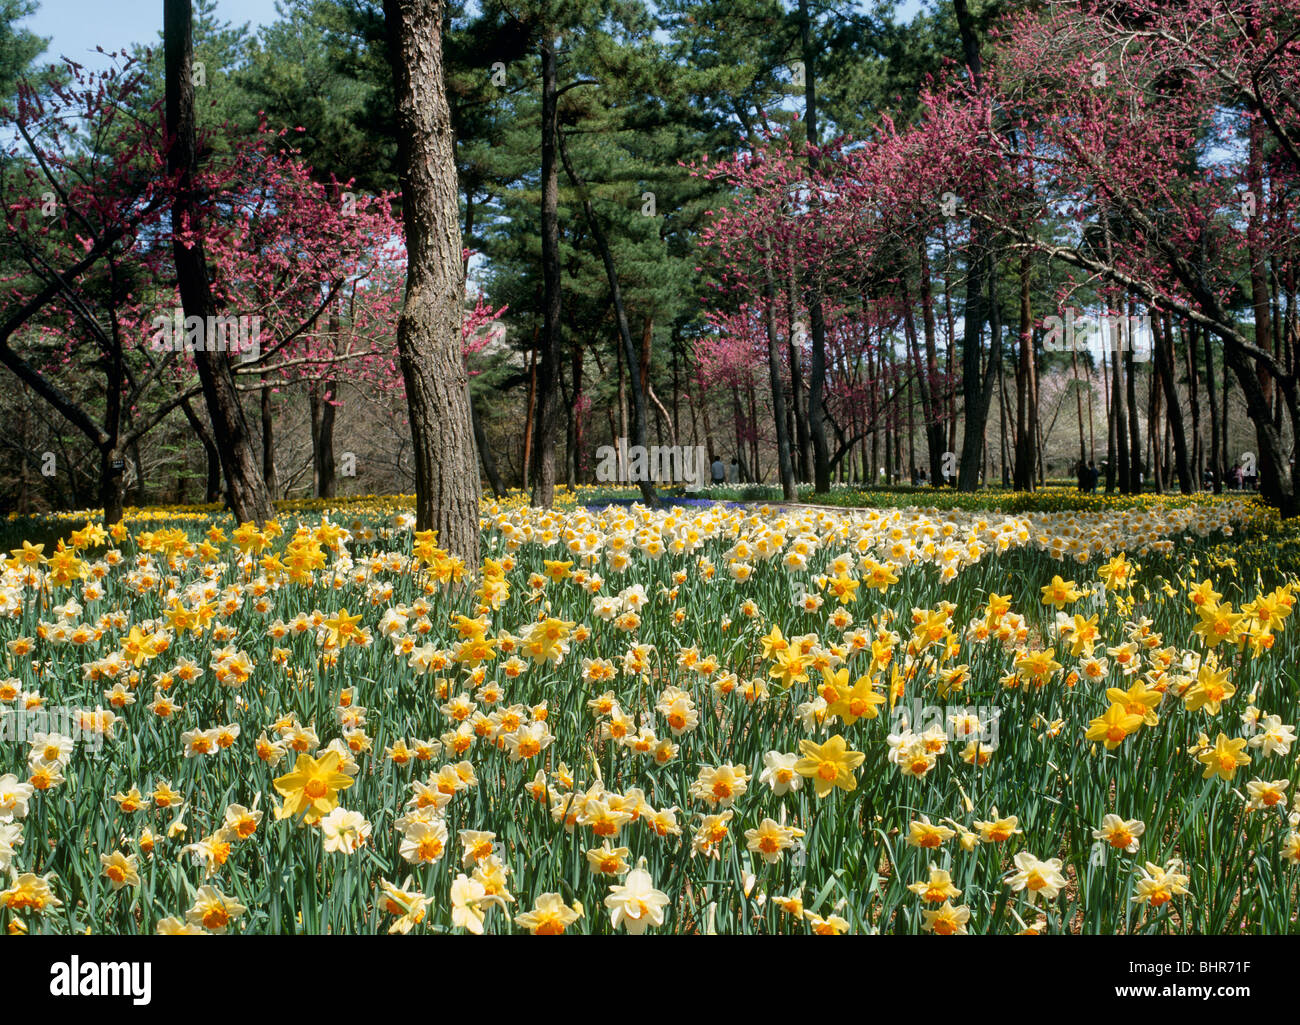 Daffodil, Hitachinaka, Ibaraki, Japan Stock Photo